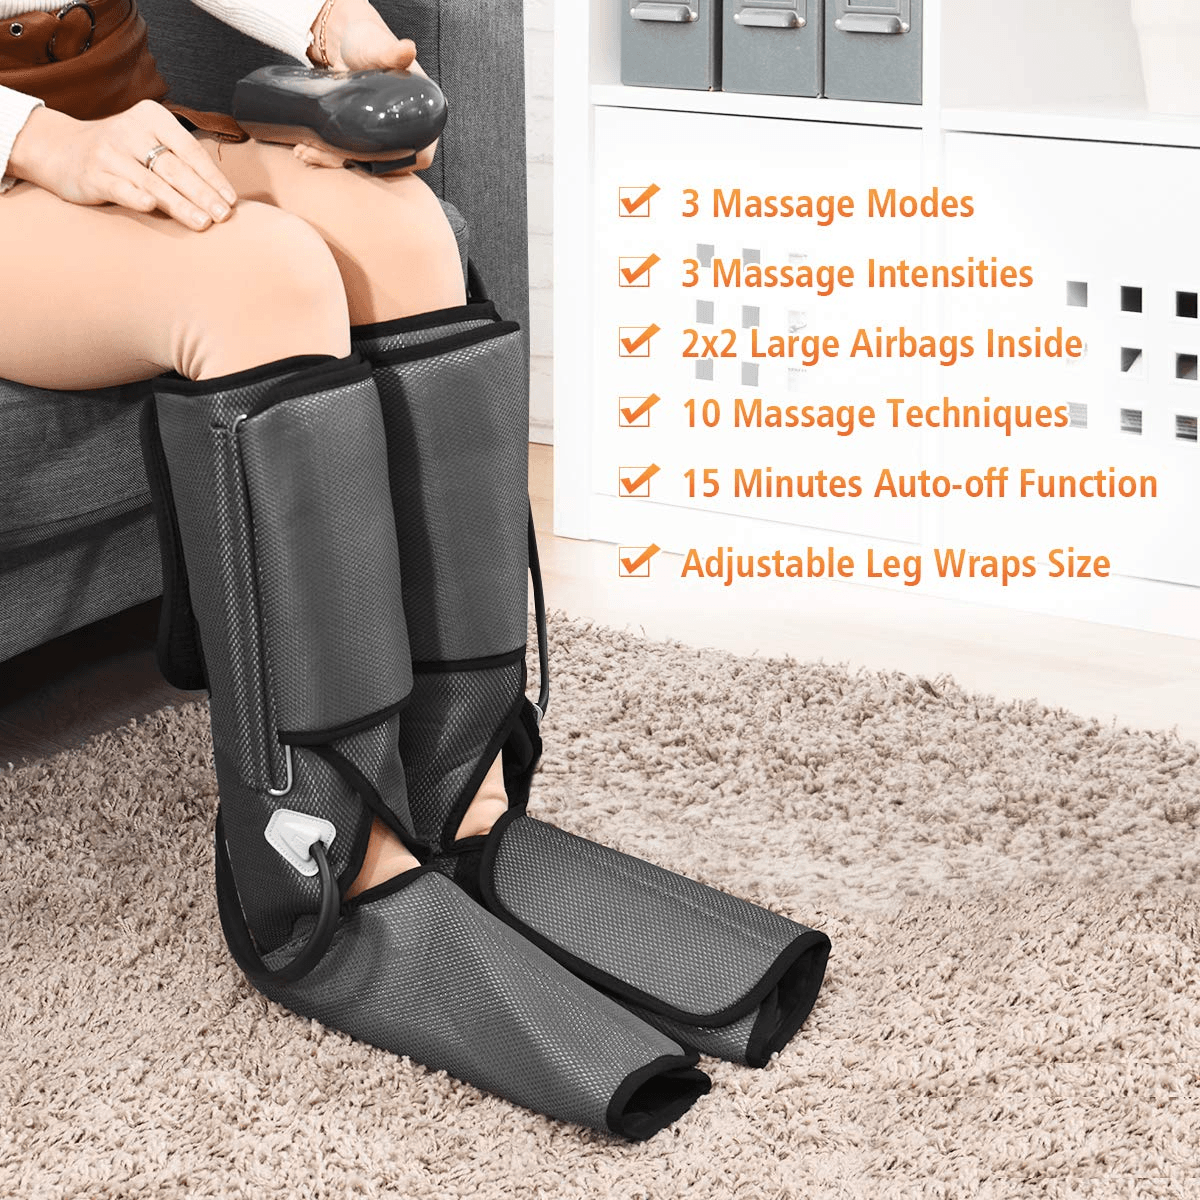 Giantex Foot Leg Massager, Foot and Calf Massage with Handheld Controller, 3 Modes 3 Intensities - Giantexus